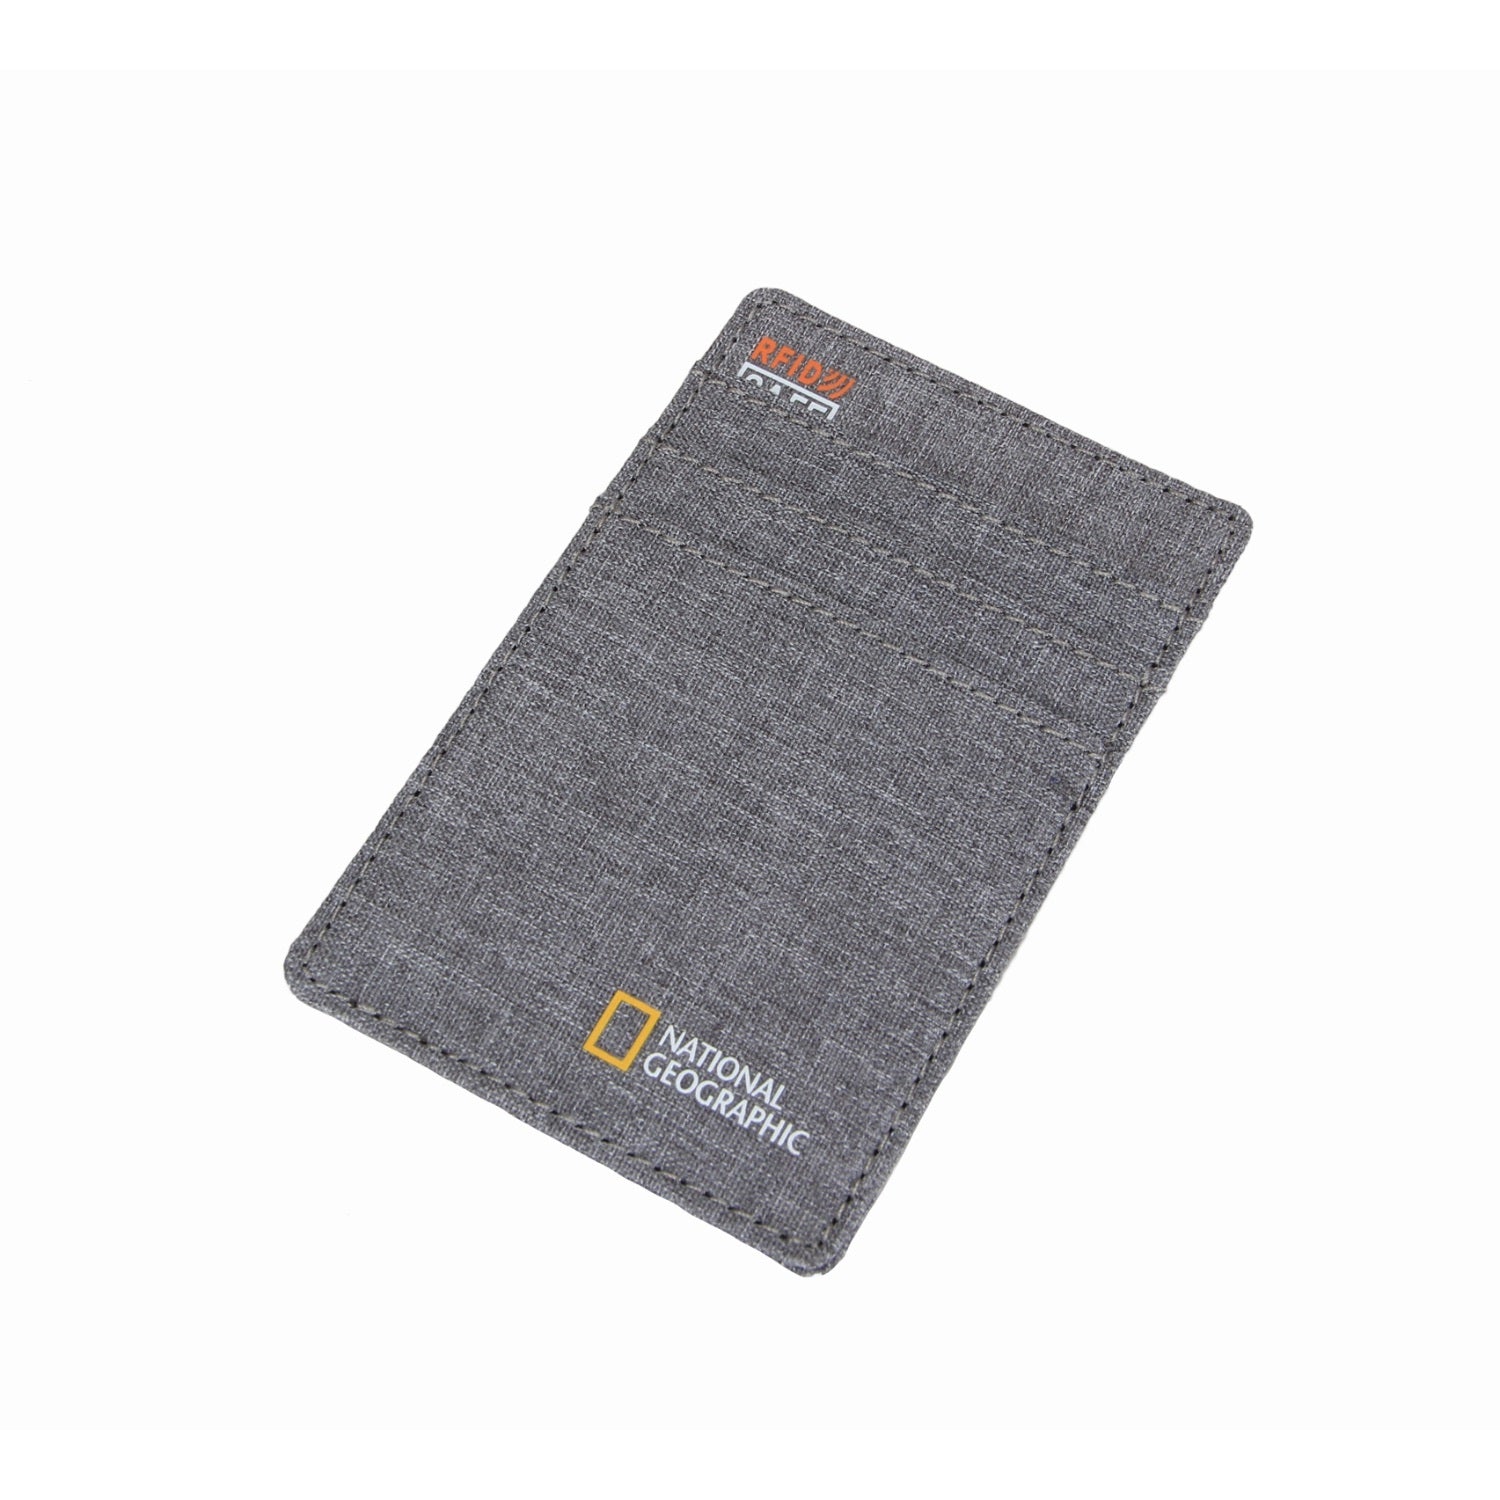 National Geographic - NG-B RFID card holder - Grey-2